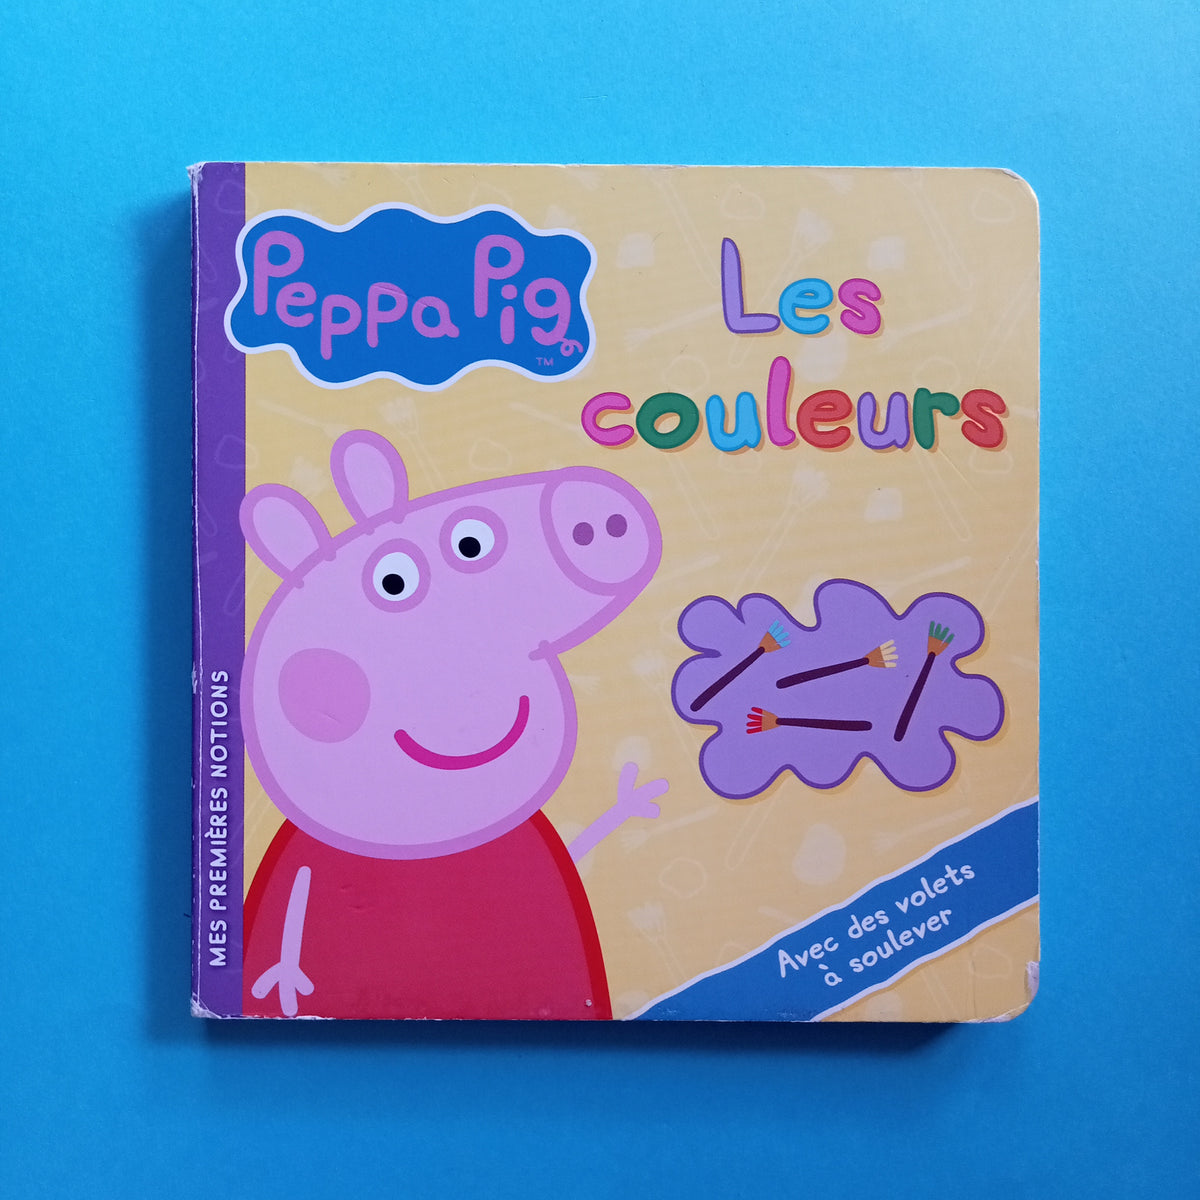 Lecture: Peppa Pig - Peppa va à la bibliothèque. Hachette Jeunesse